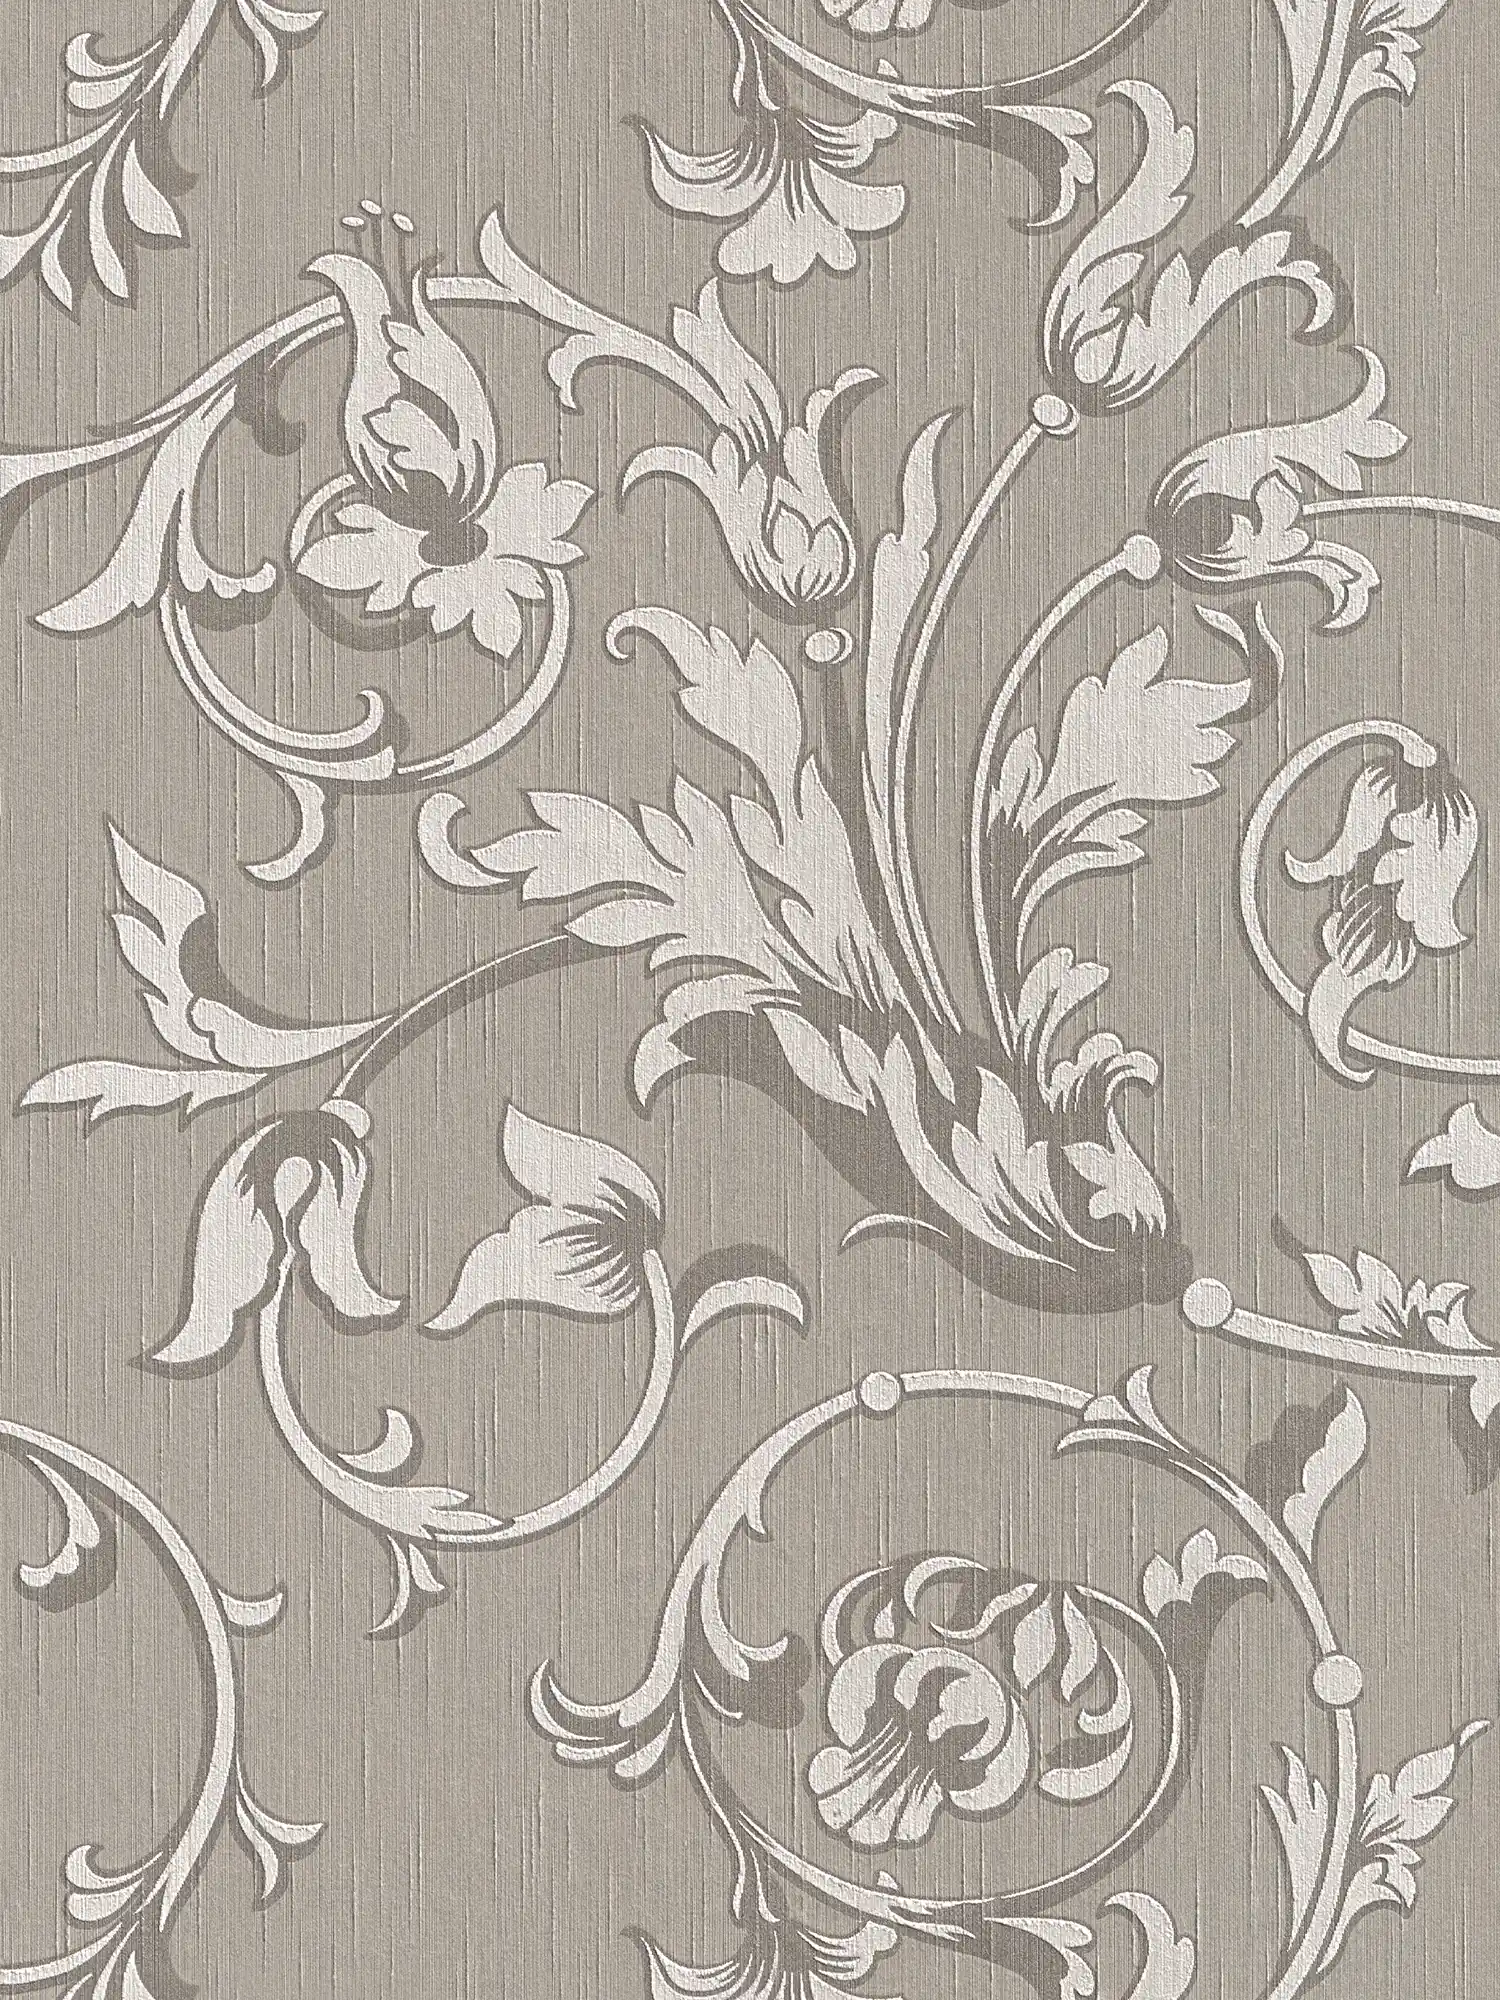         Tapete im Kolonial Stil mit floralen Ornamenten – Braun, Grau
    